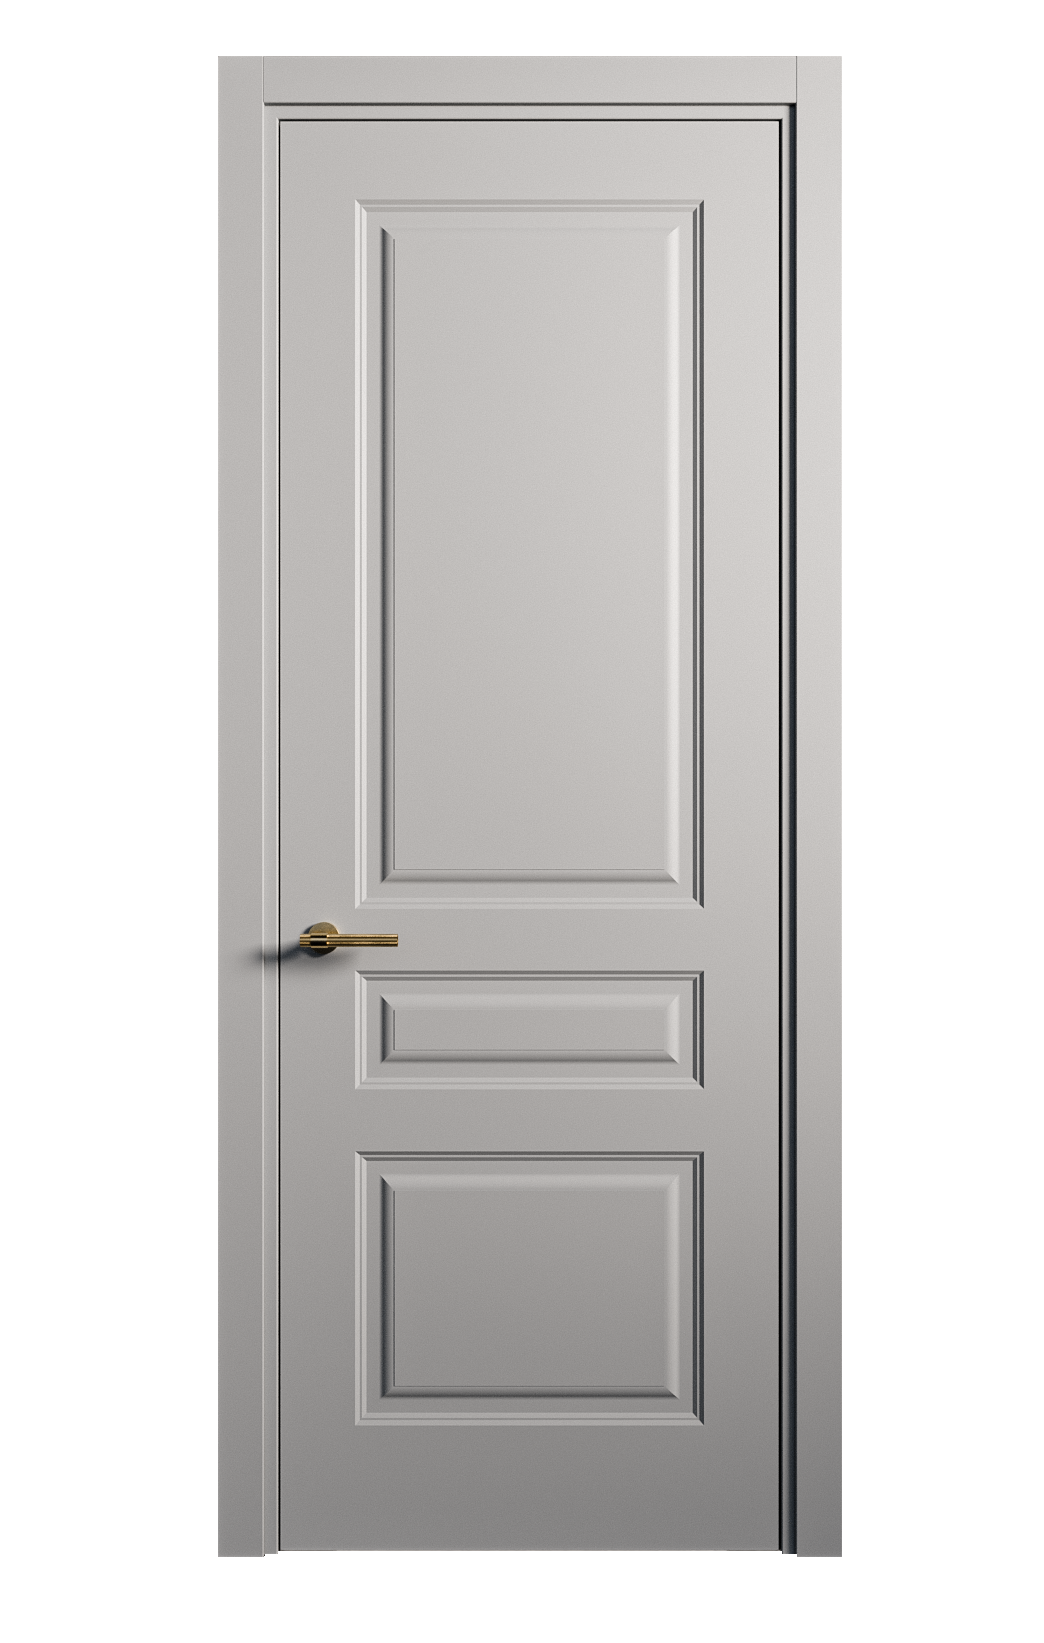 Межкомнатная дверь Вита-2 глухая эмаль ral 7040 26331